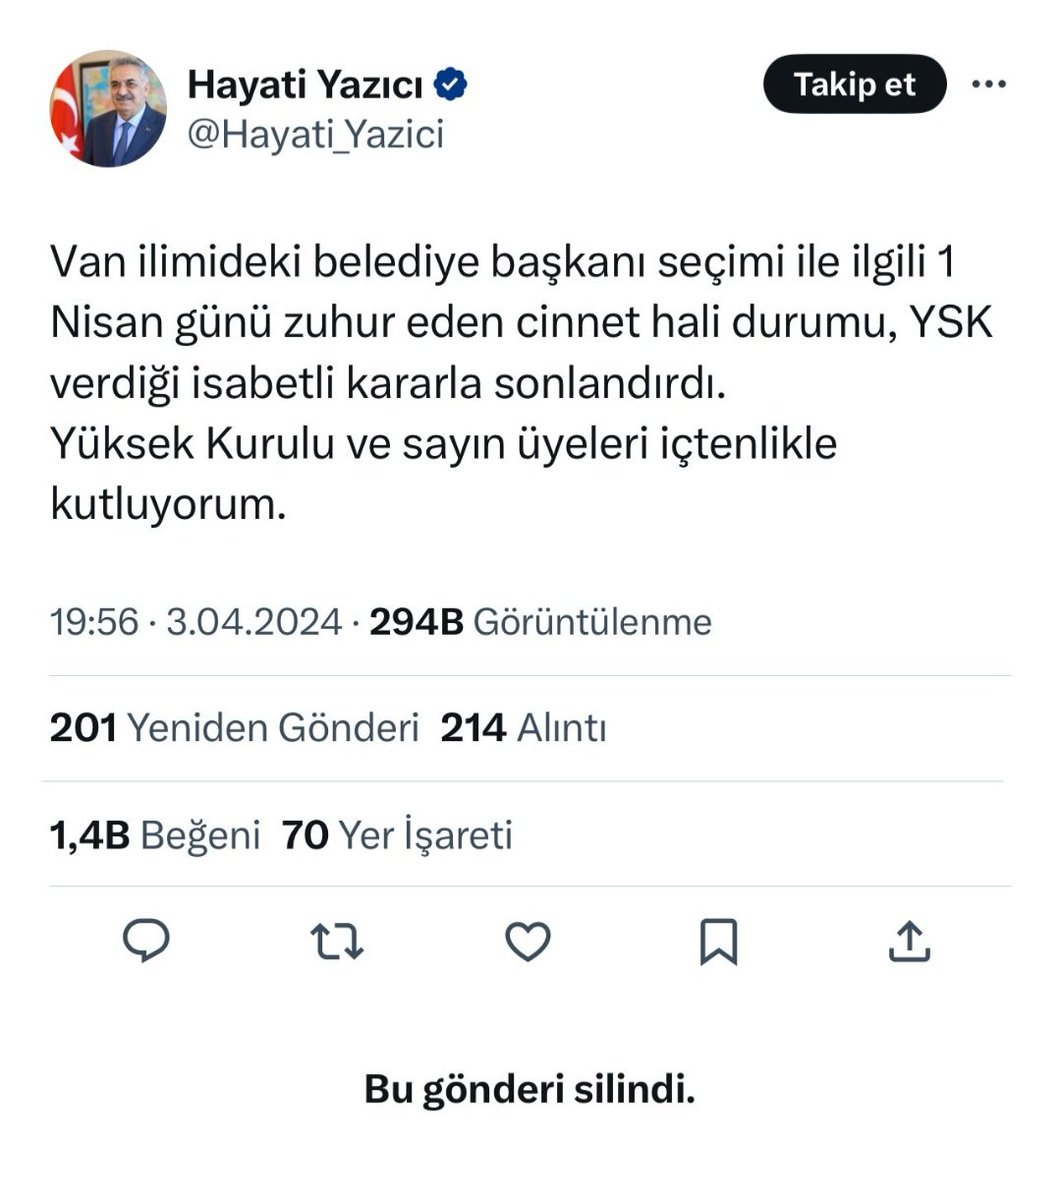 İnsan olmak, insan kalmak zor iştir! Yazdığı Twitt'in arkasında duramayan, Tayyip Erdoğan'dan korkup yazdığını silen bu kişi insanlıktan ne kadar nasibini almış olabilir?